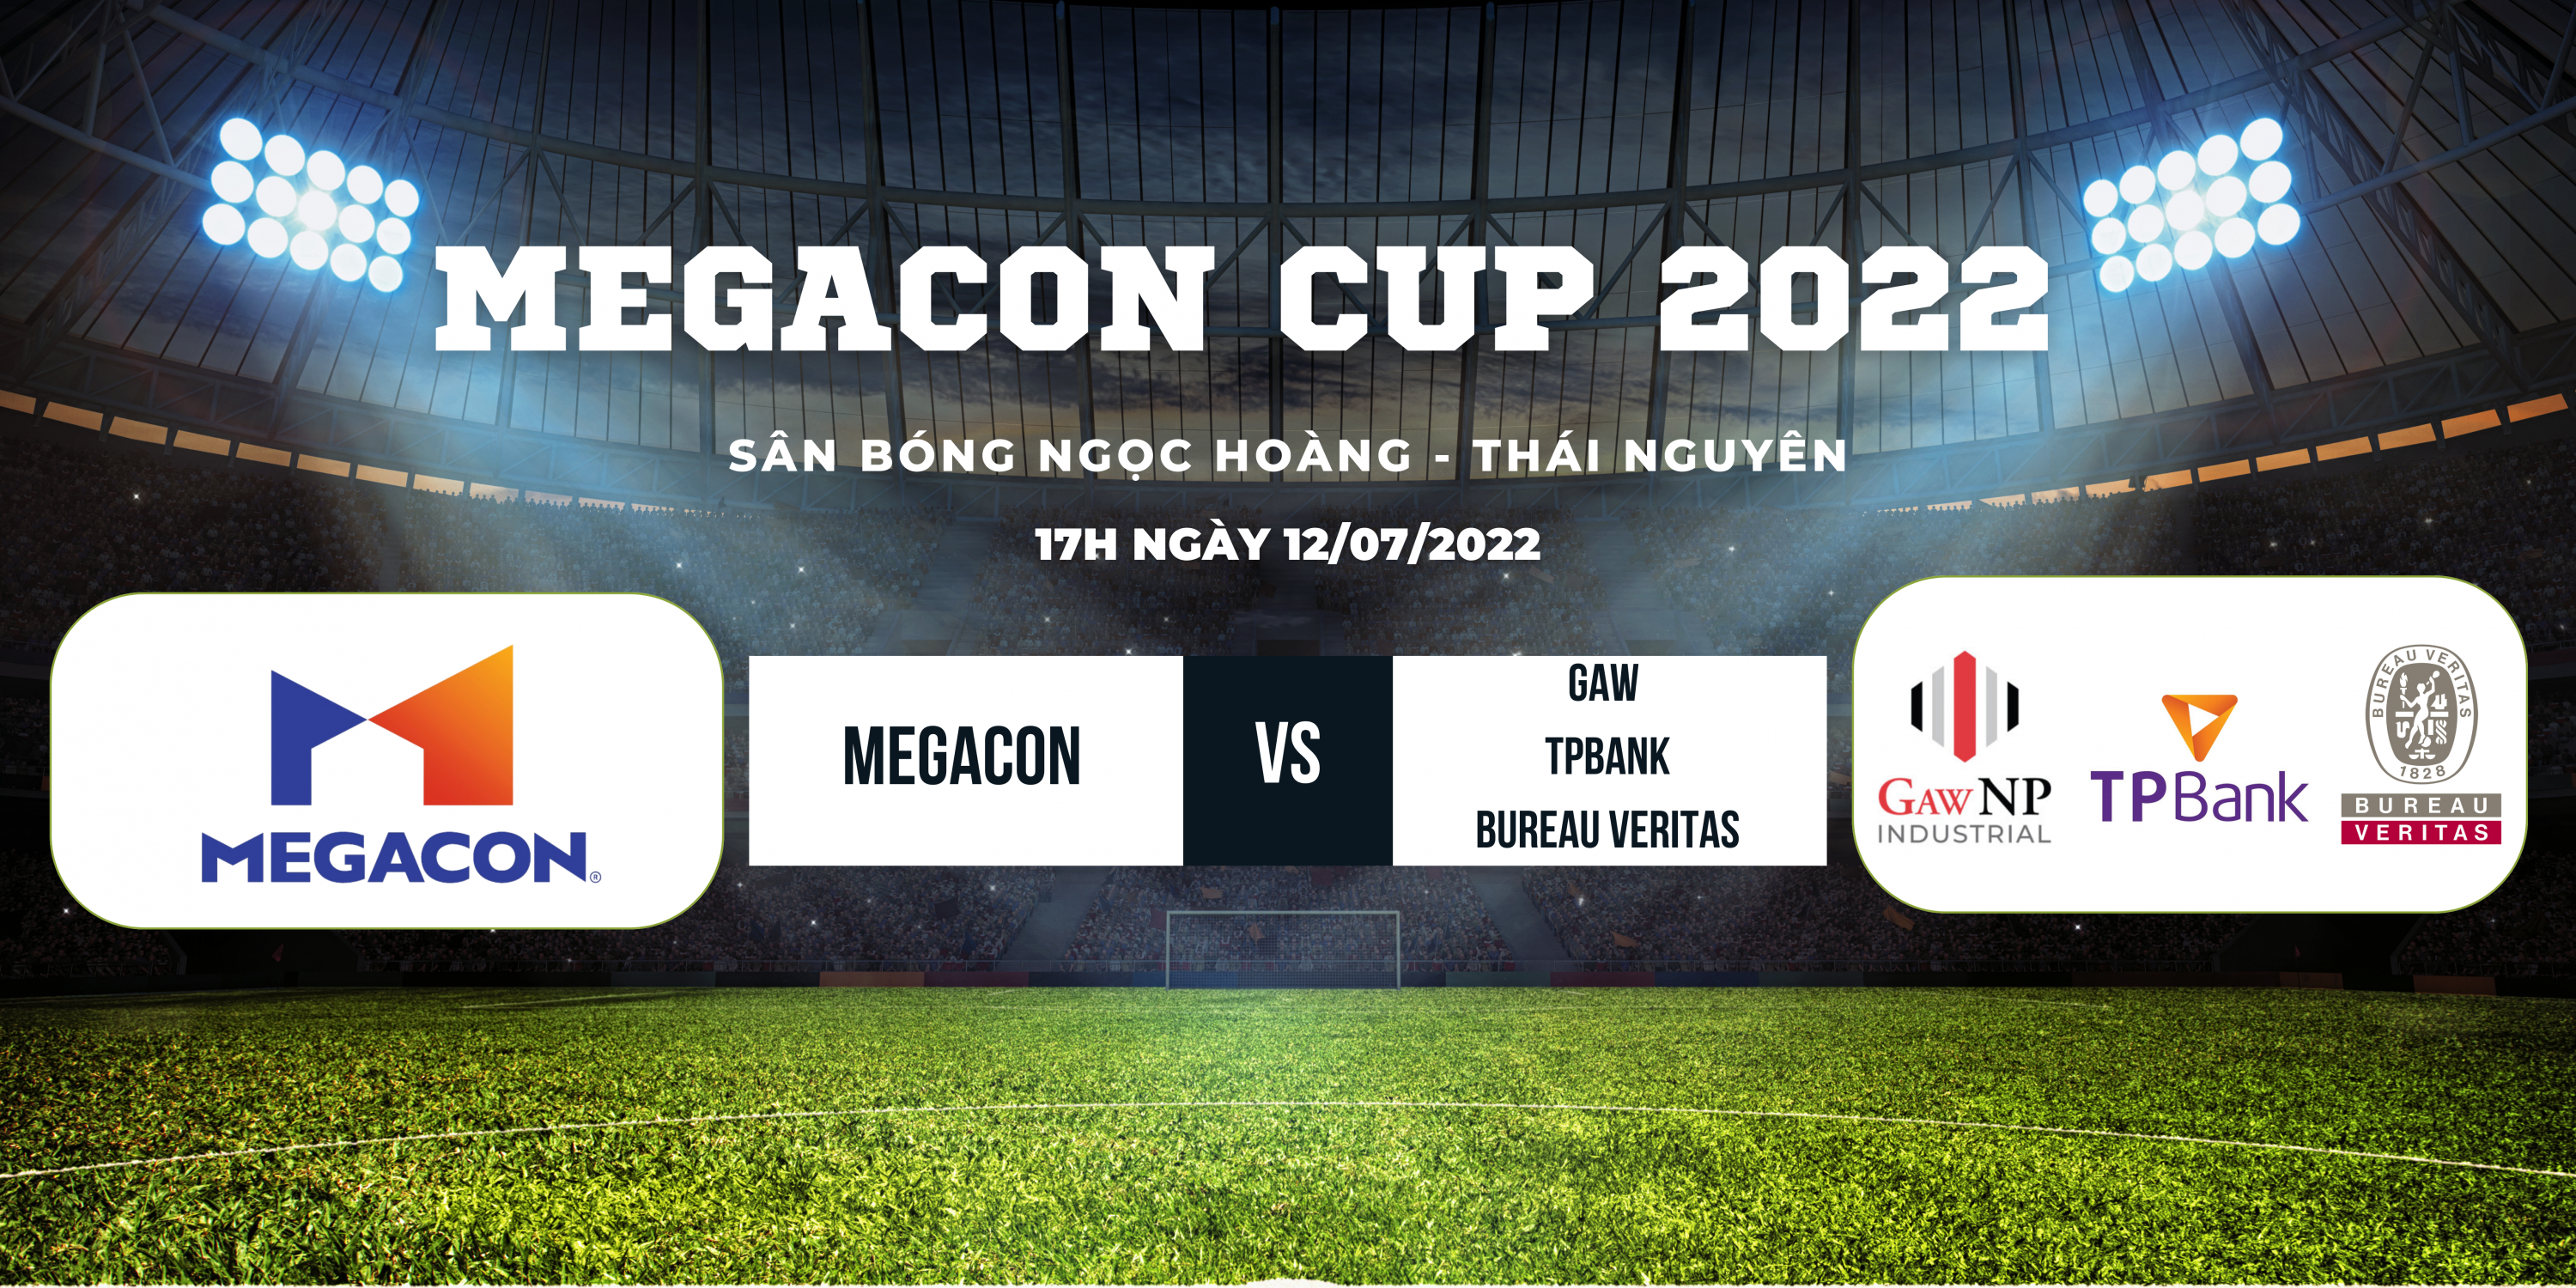 MEGACON CUP 2022 - NHỮNG KỶ NIỆM KHÓ QUÊN